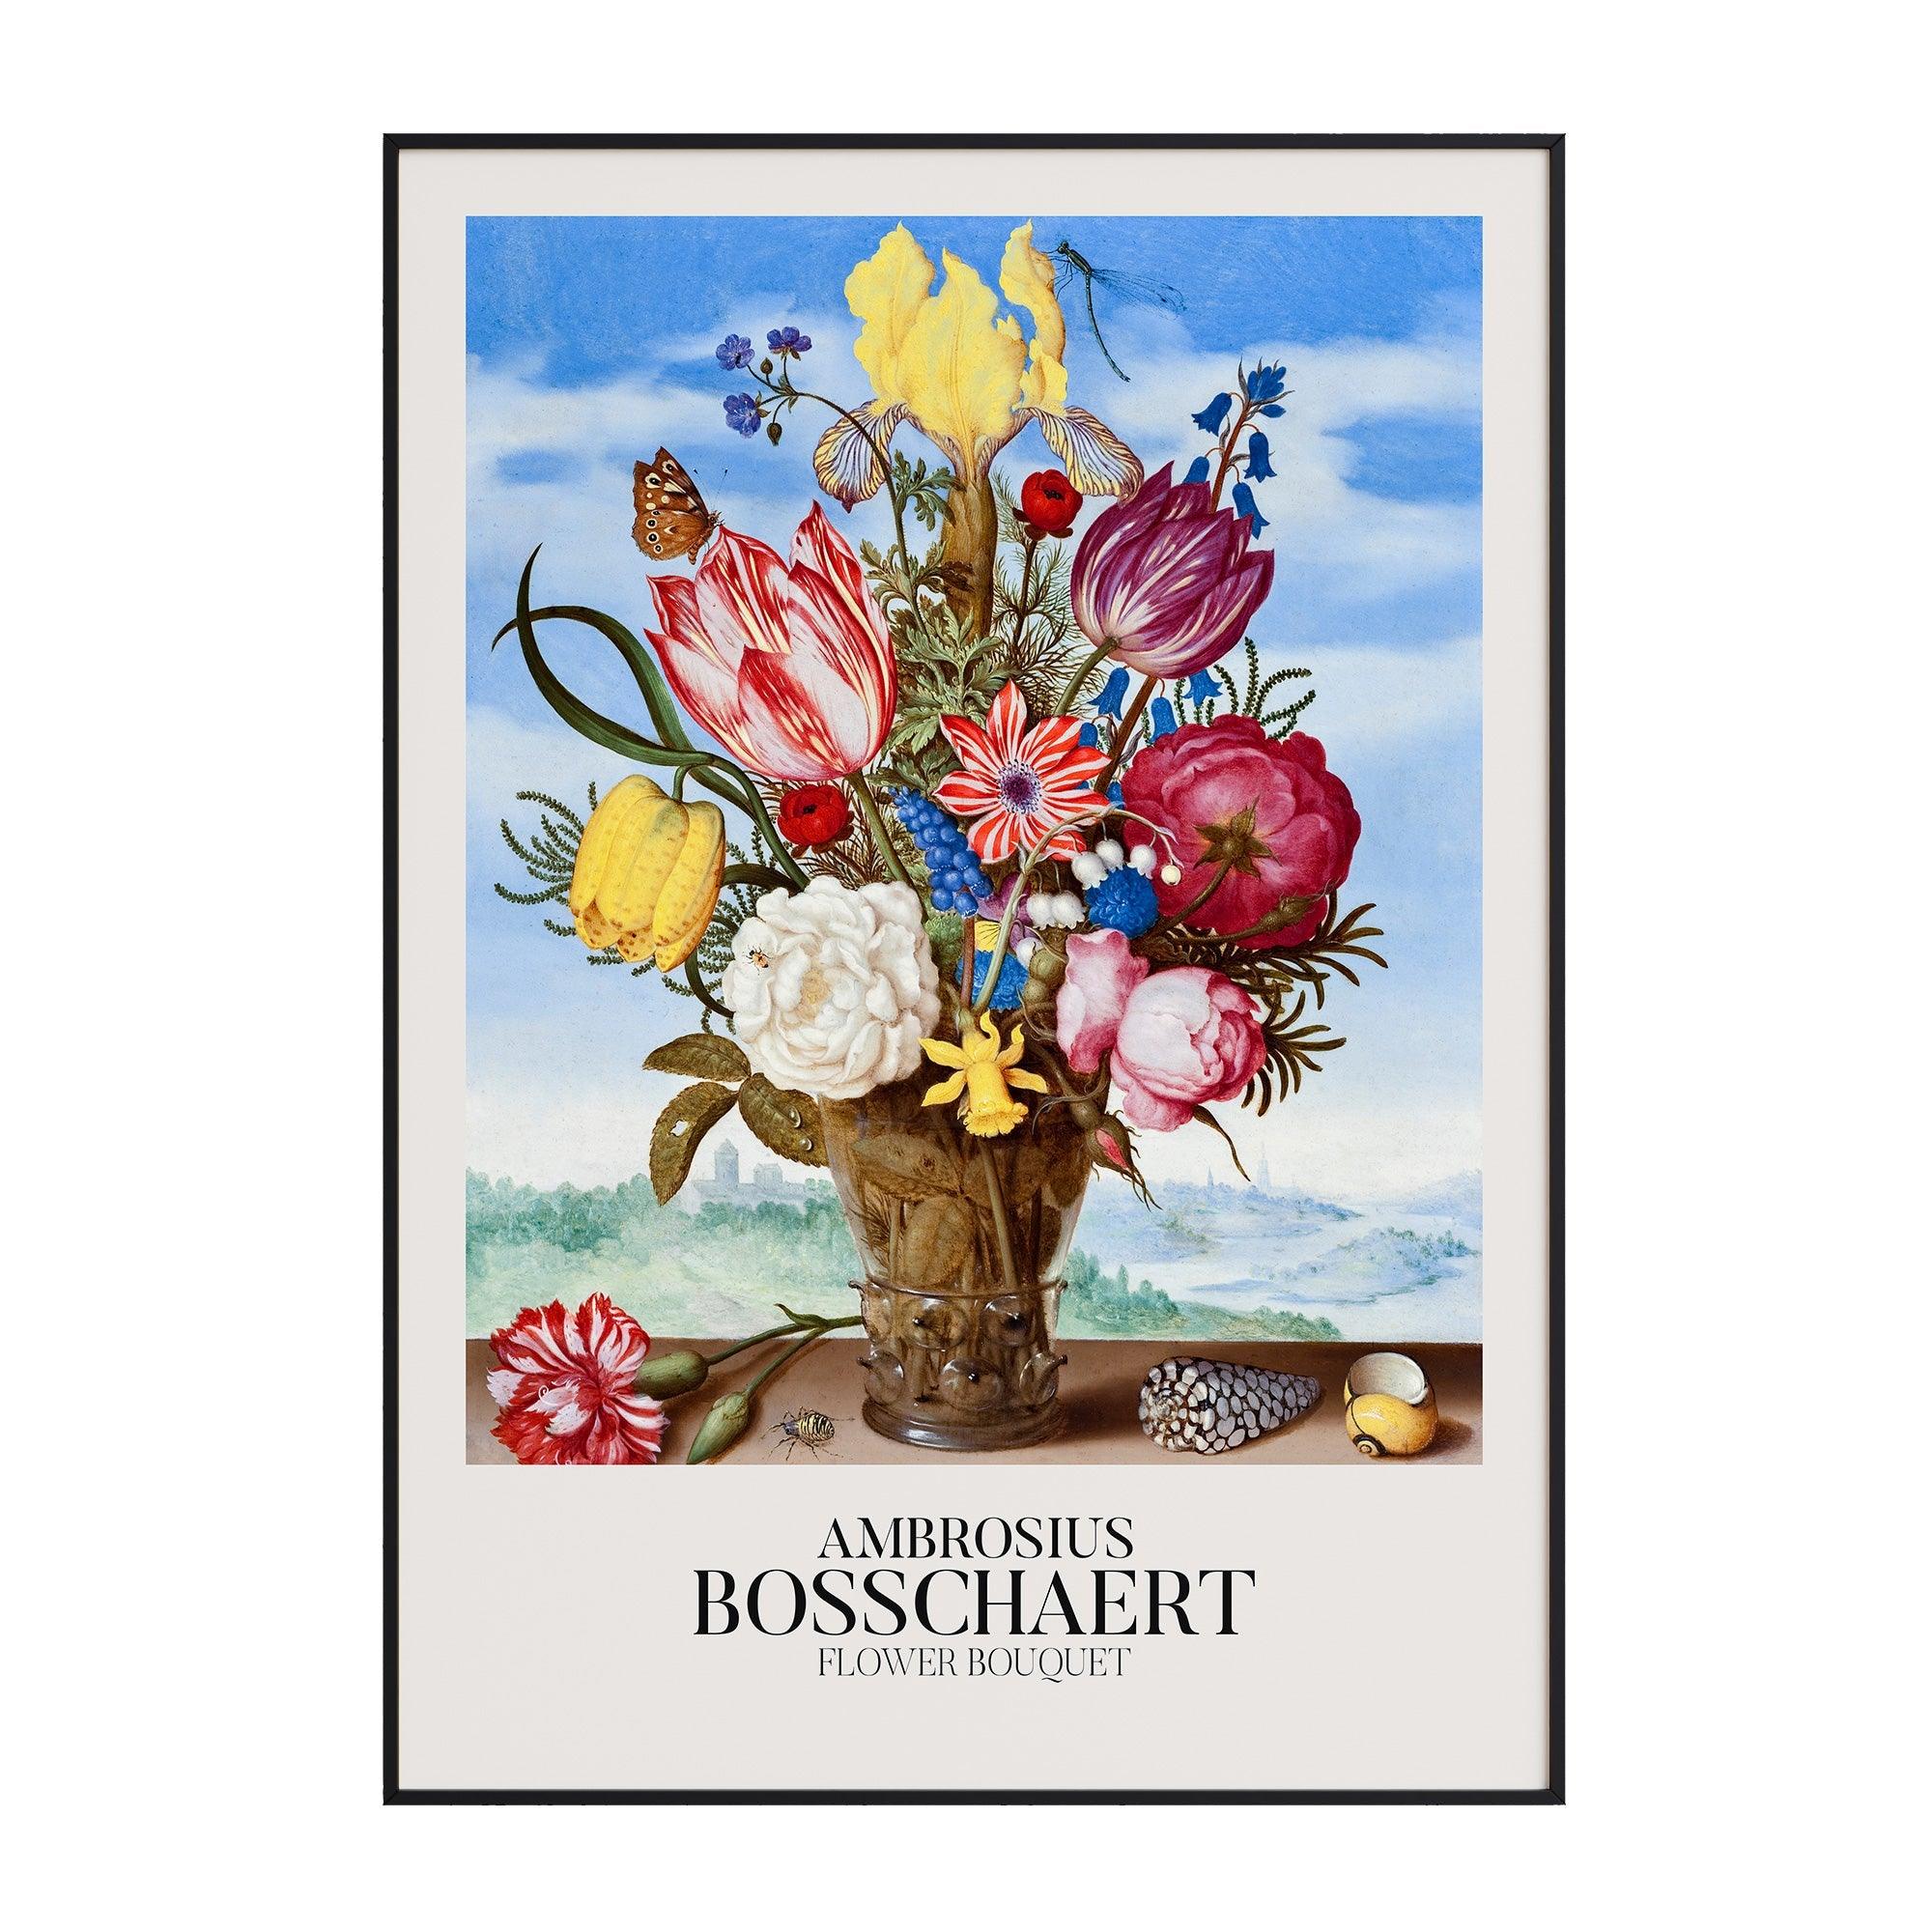 Ambrousius Bosschaert - Flower Bouquet - stravee - Wall Art Print